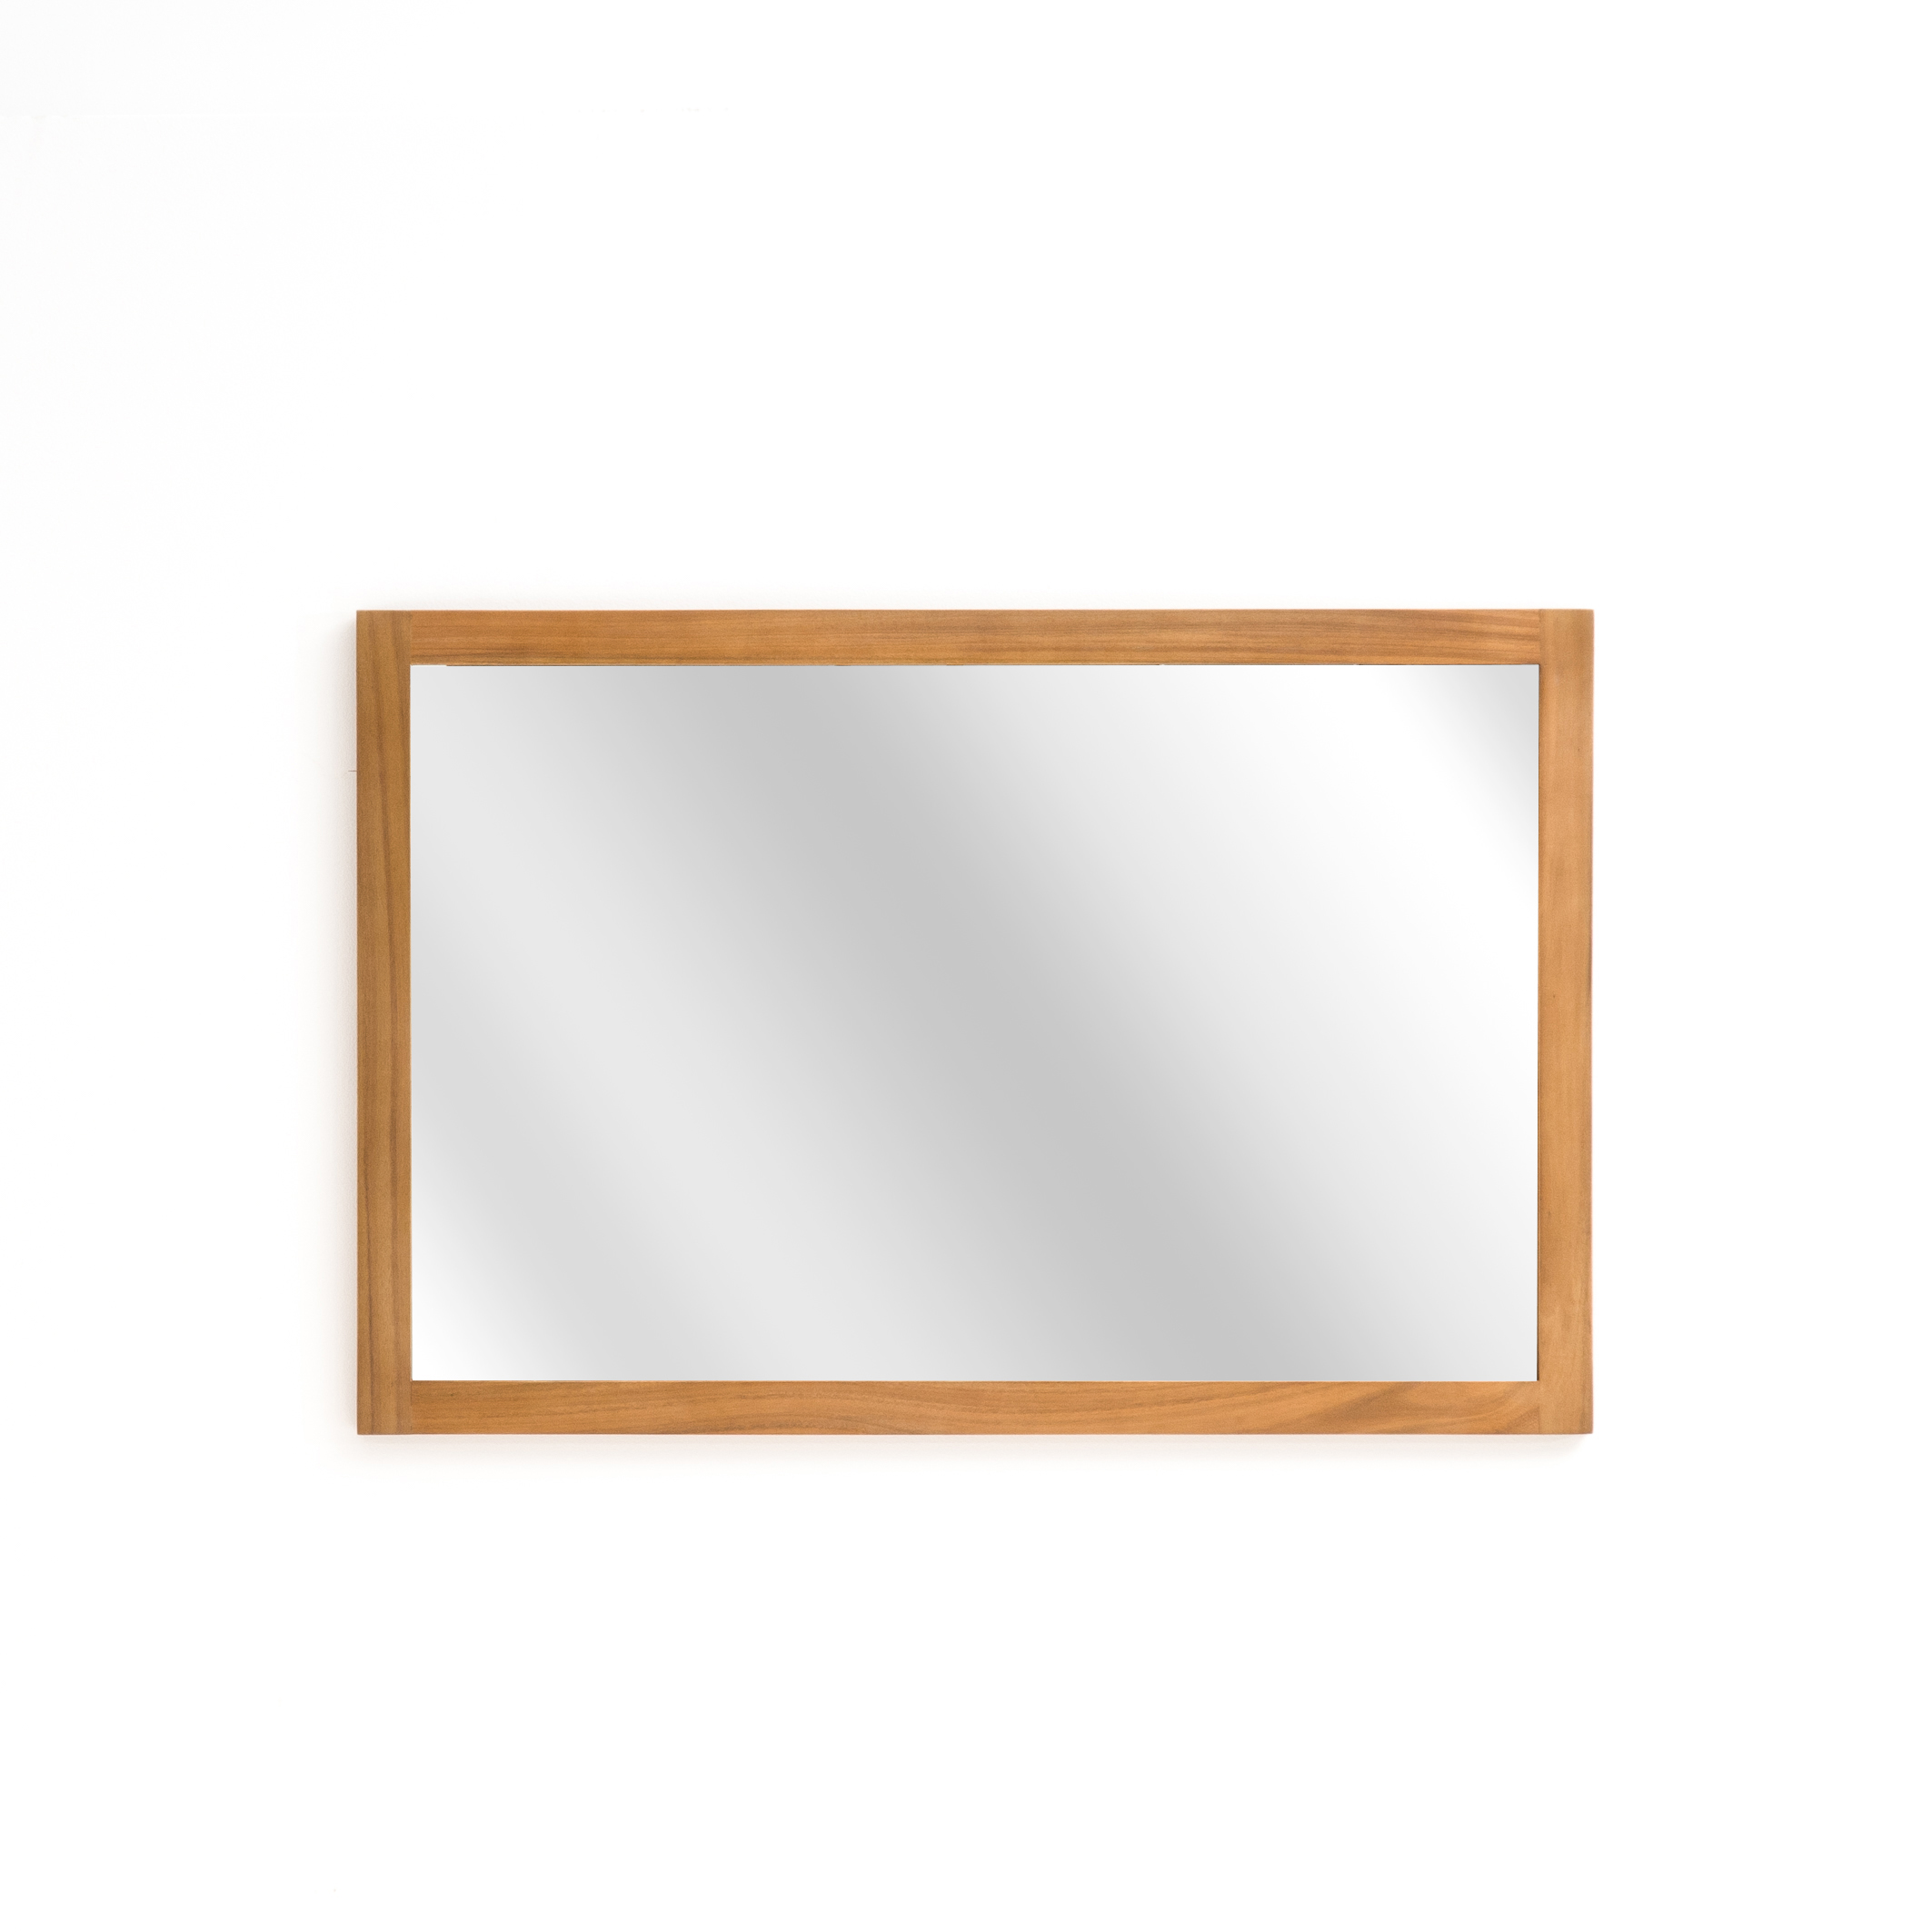 Badkamer spiegel, rechthoekig model, 90 cm La Redoute Interieurs | La Redoute